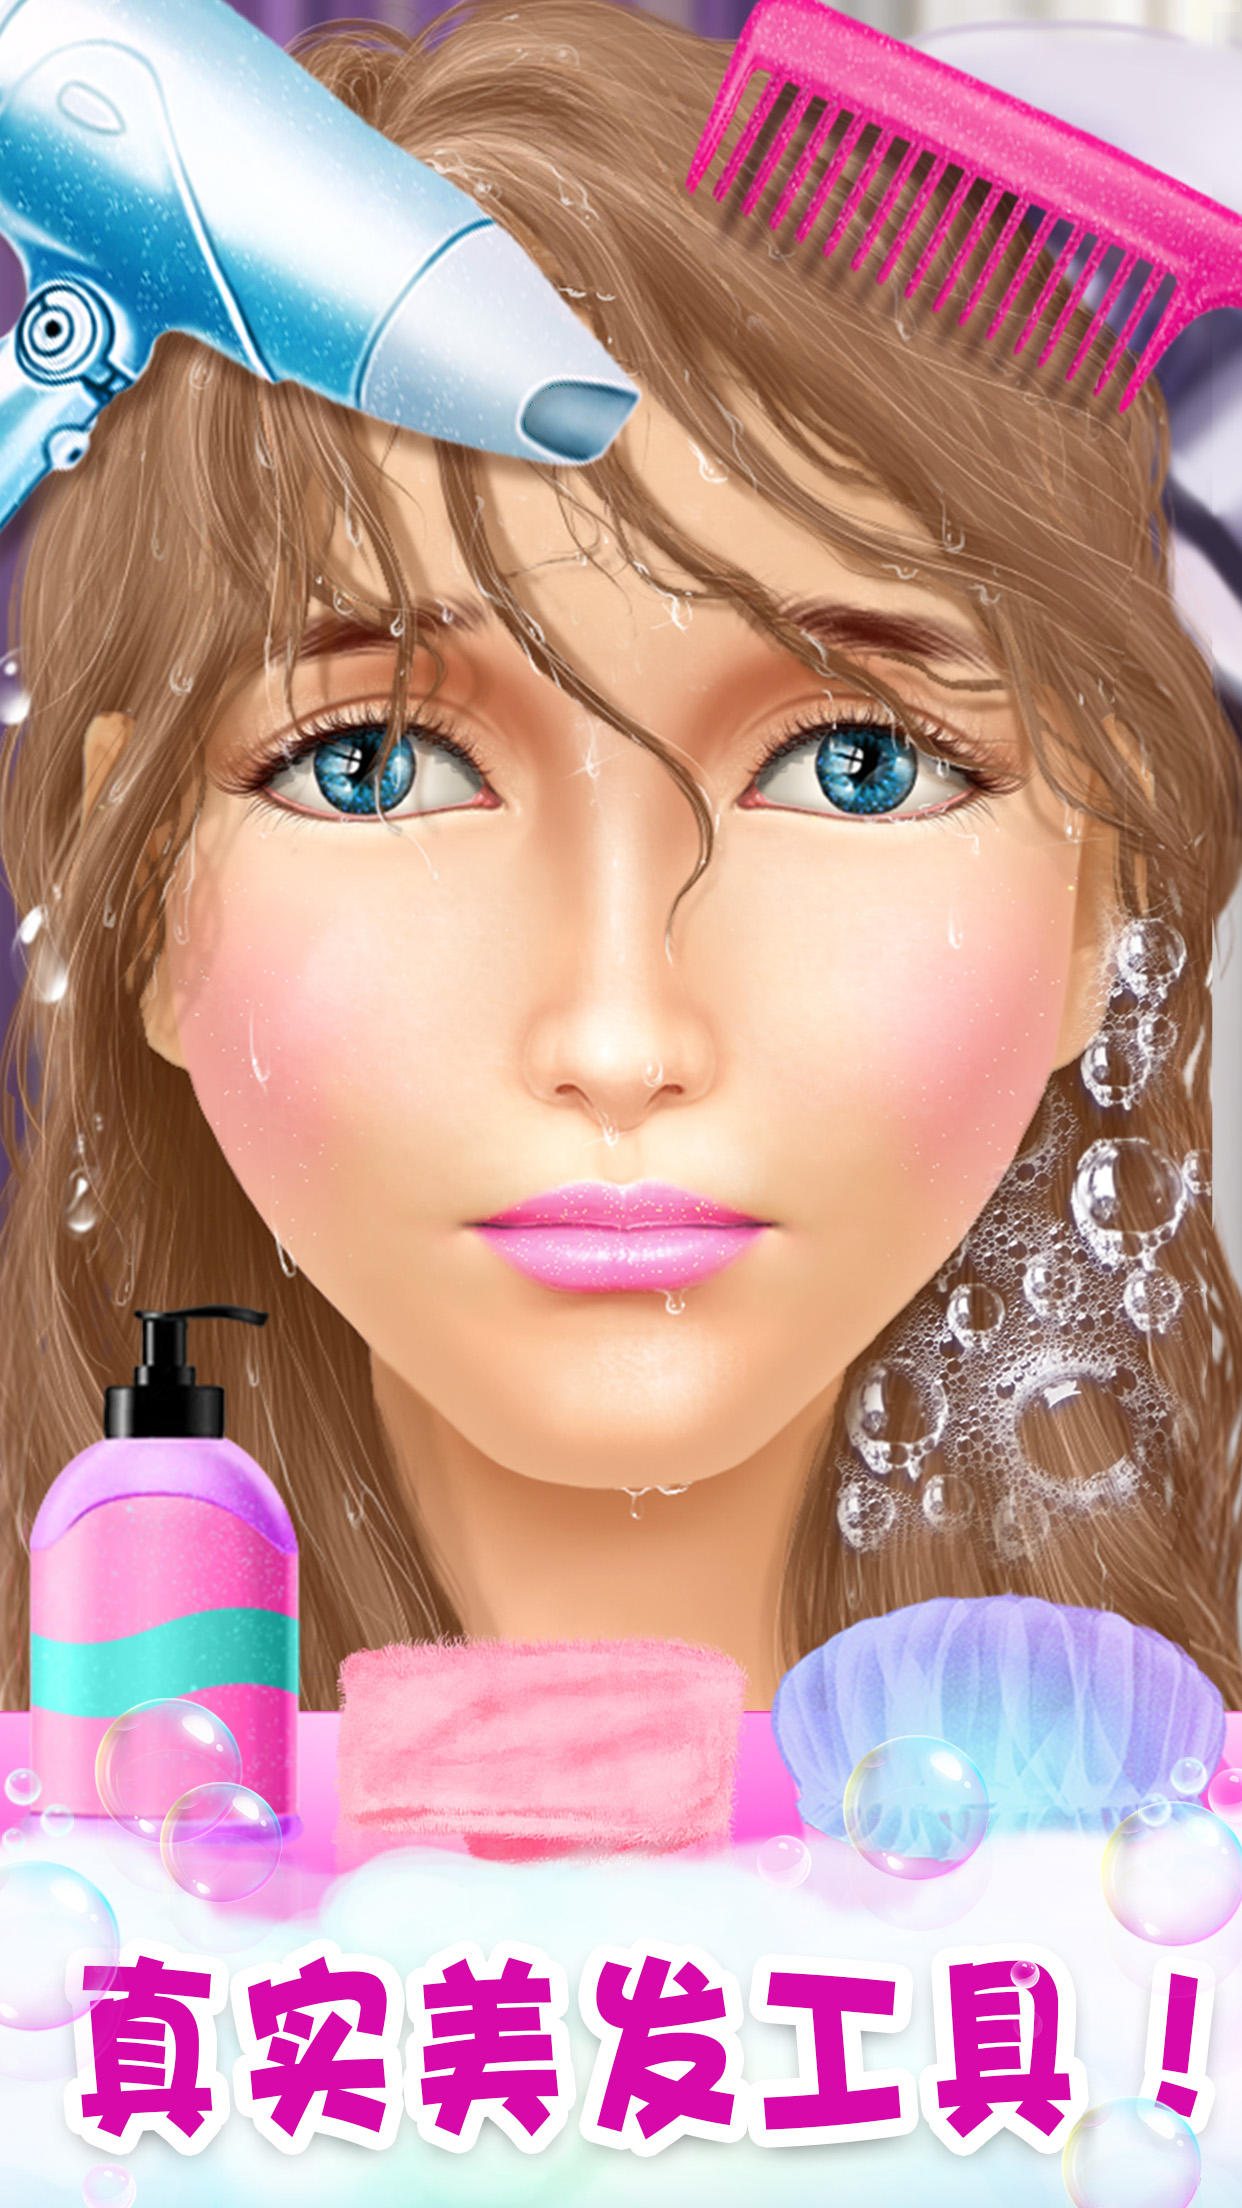 公主游戏:公主换装化妆美发沙龙小游戏游戏截图